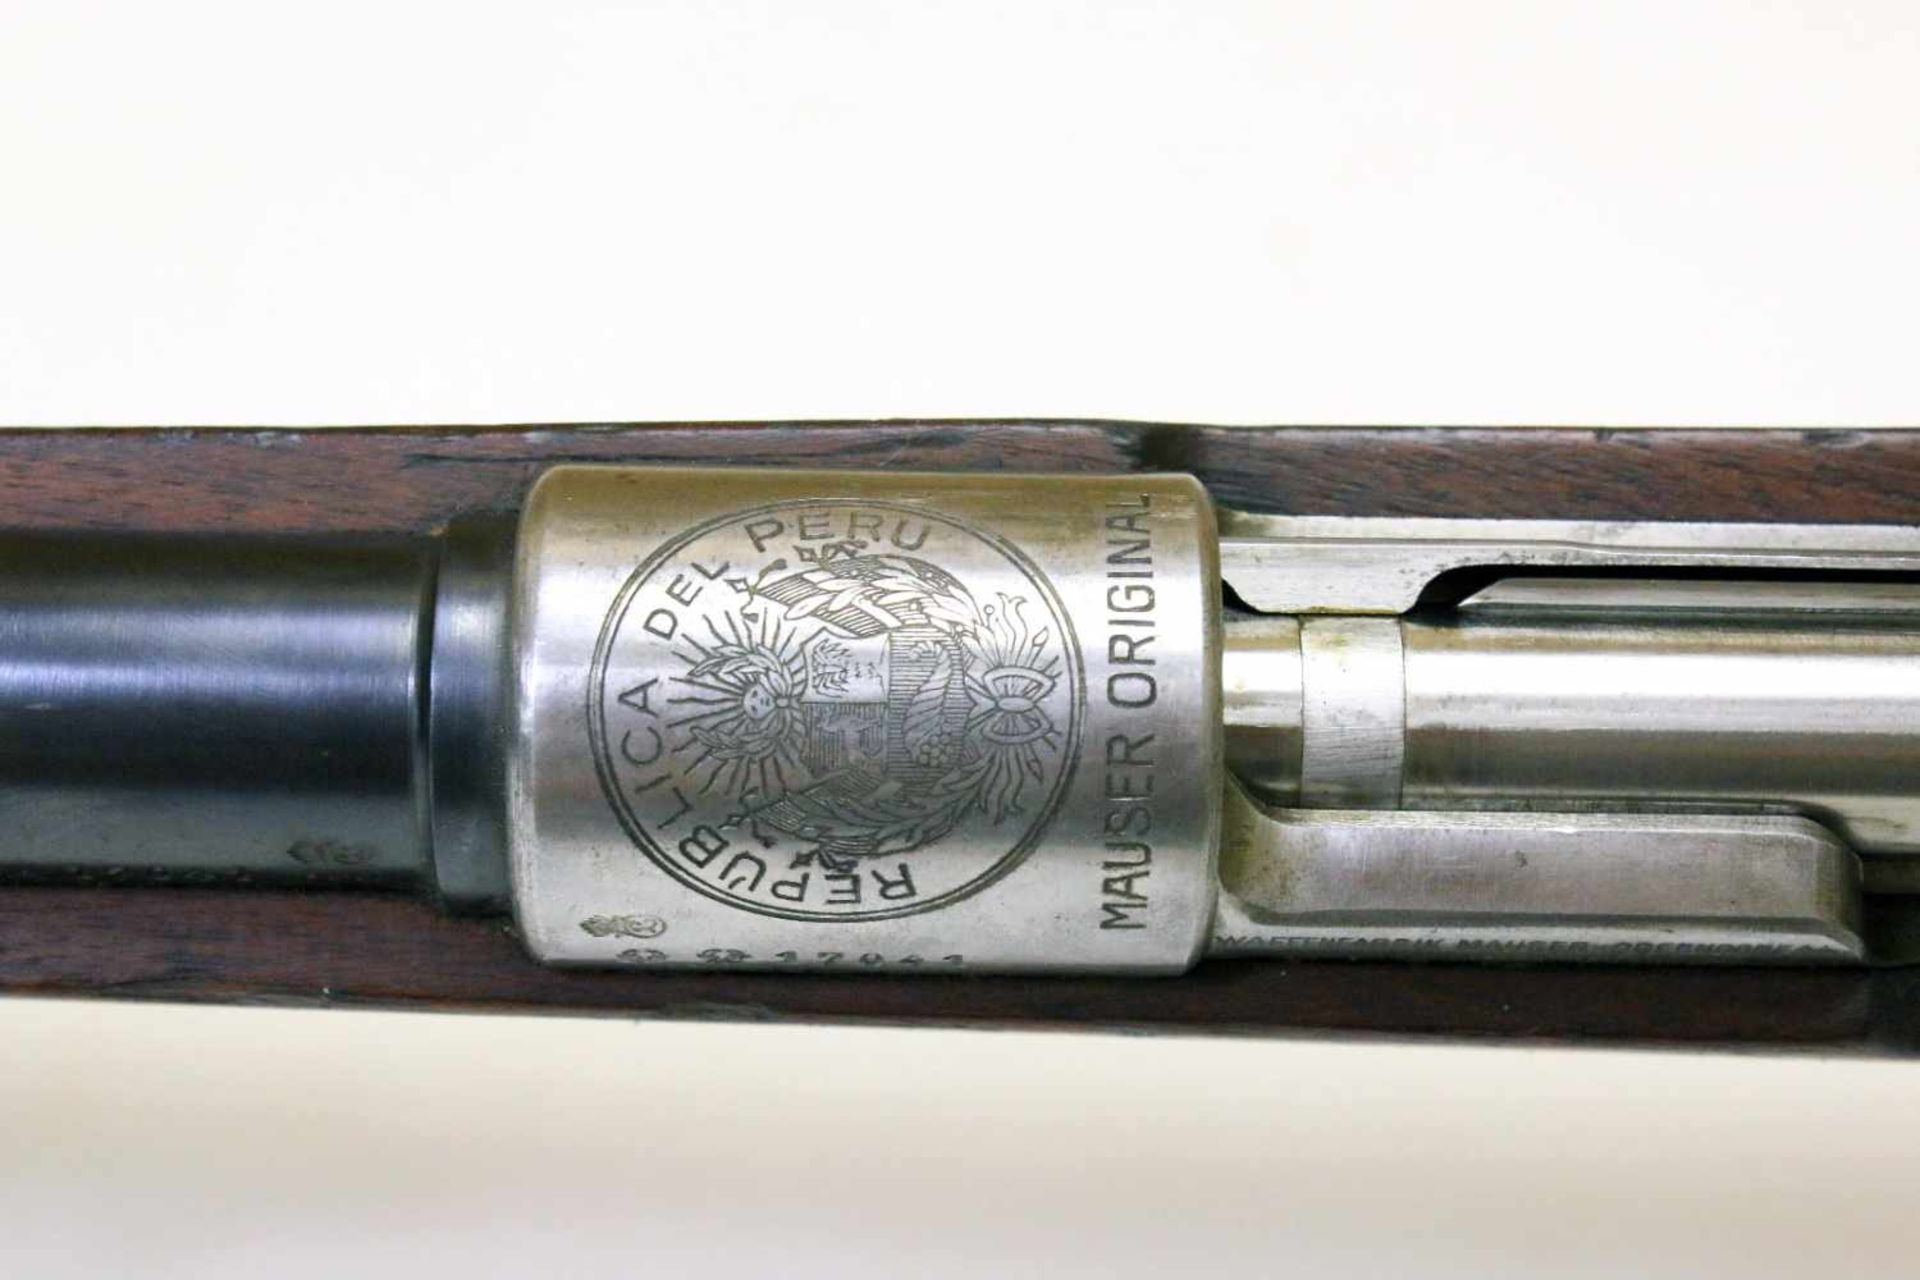 Mausergewehr M1909 Peru Cal. 7,65 x 53mm, Lauf rauh, narbig. Auf der Hülse das peruanische Wappen - Bild 13 aus 16